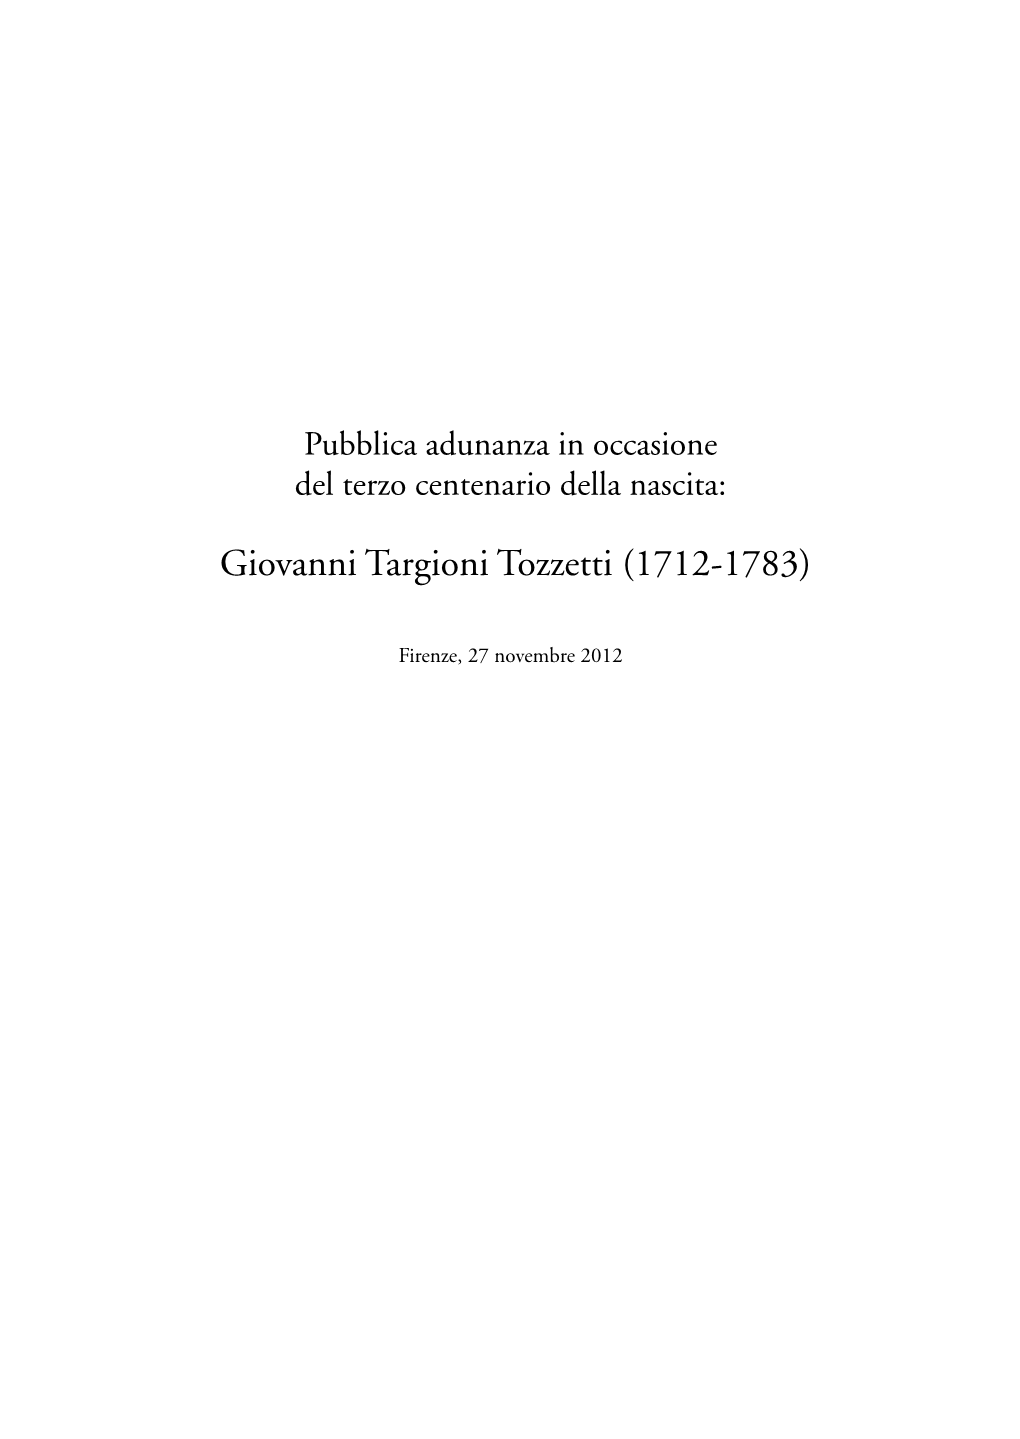 Giovanni Targioni Tozzetti (1712-1783)